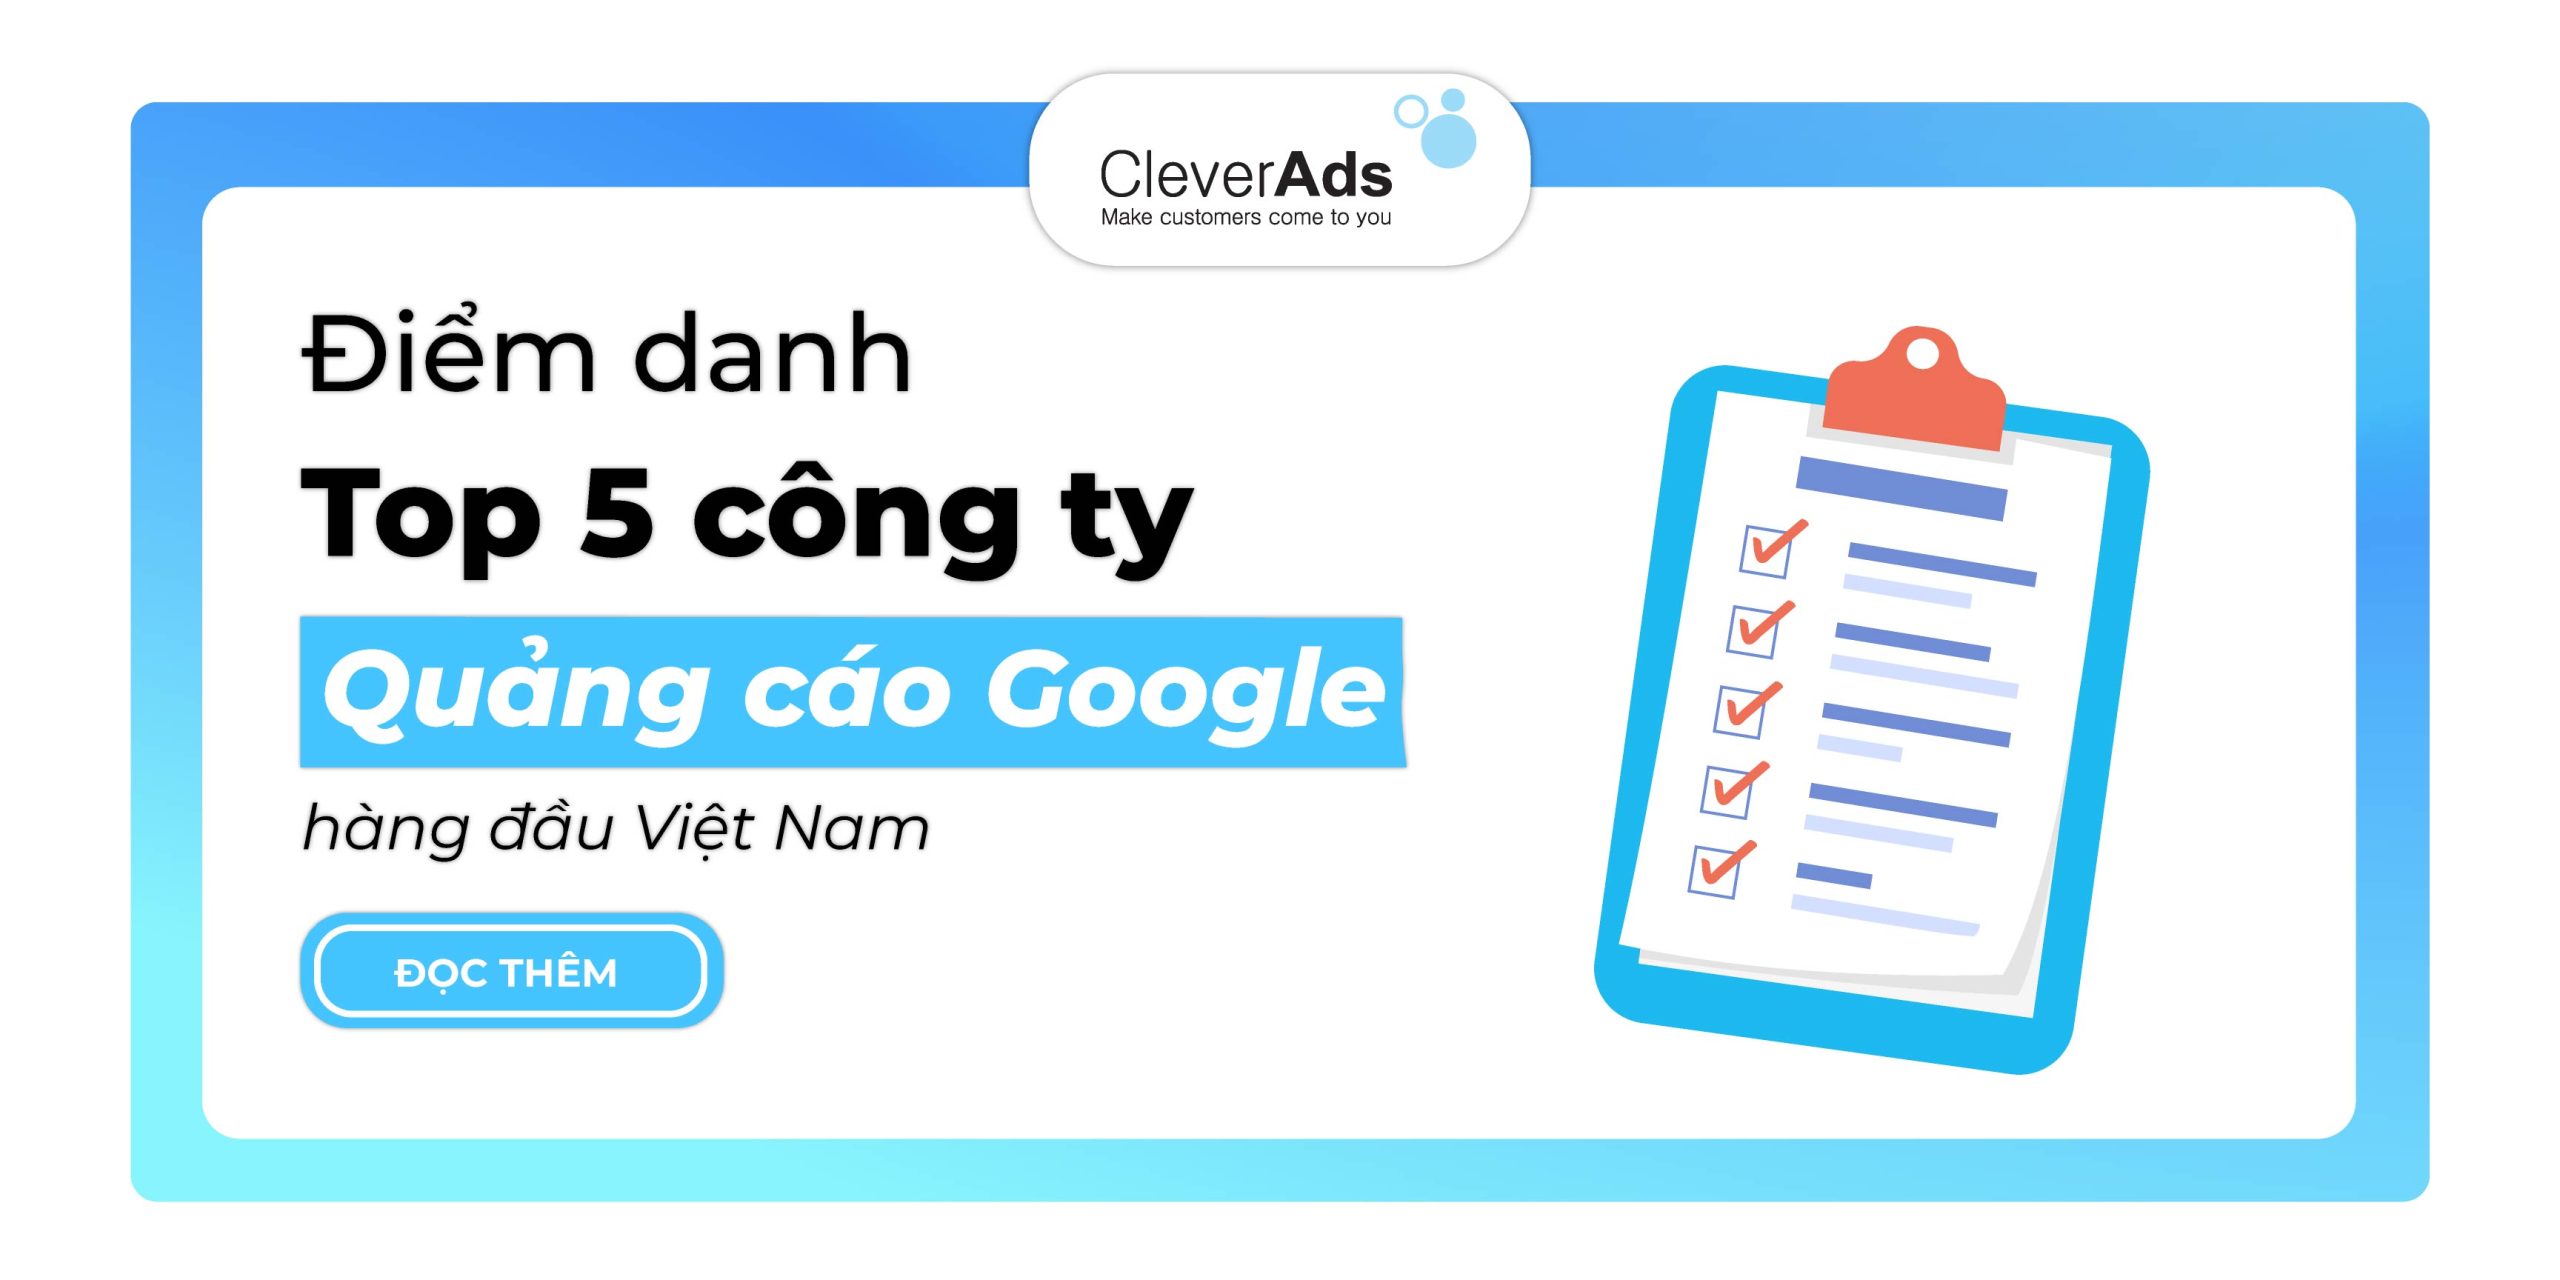 Điểm danh Top 5 công ty quảng cáo Google hàng đầu Việt Nam